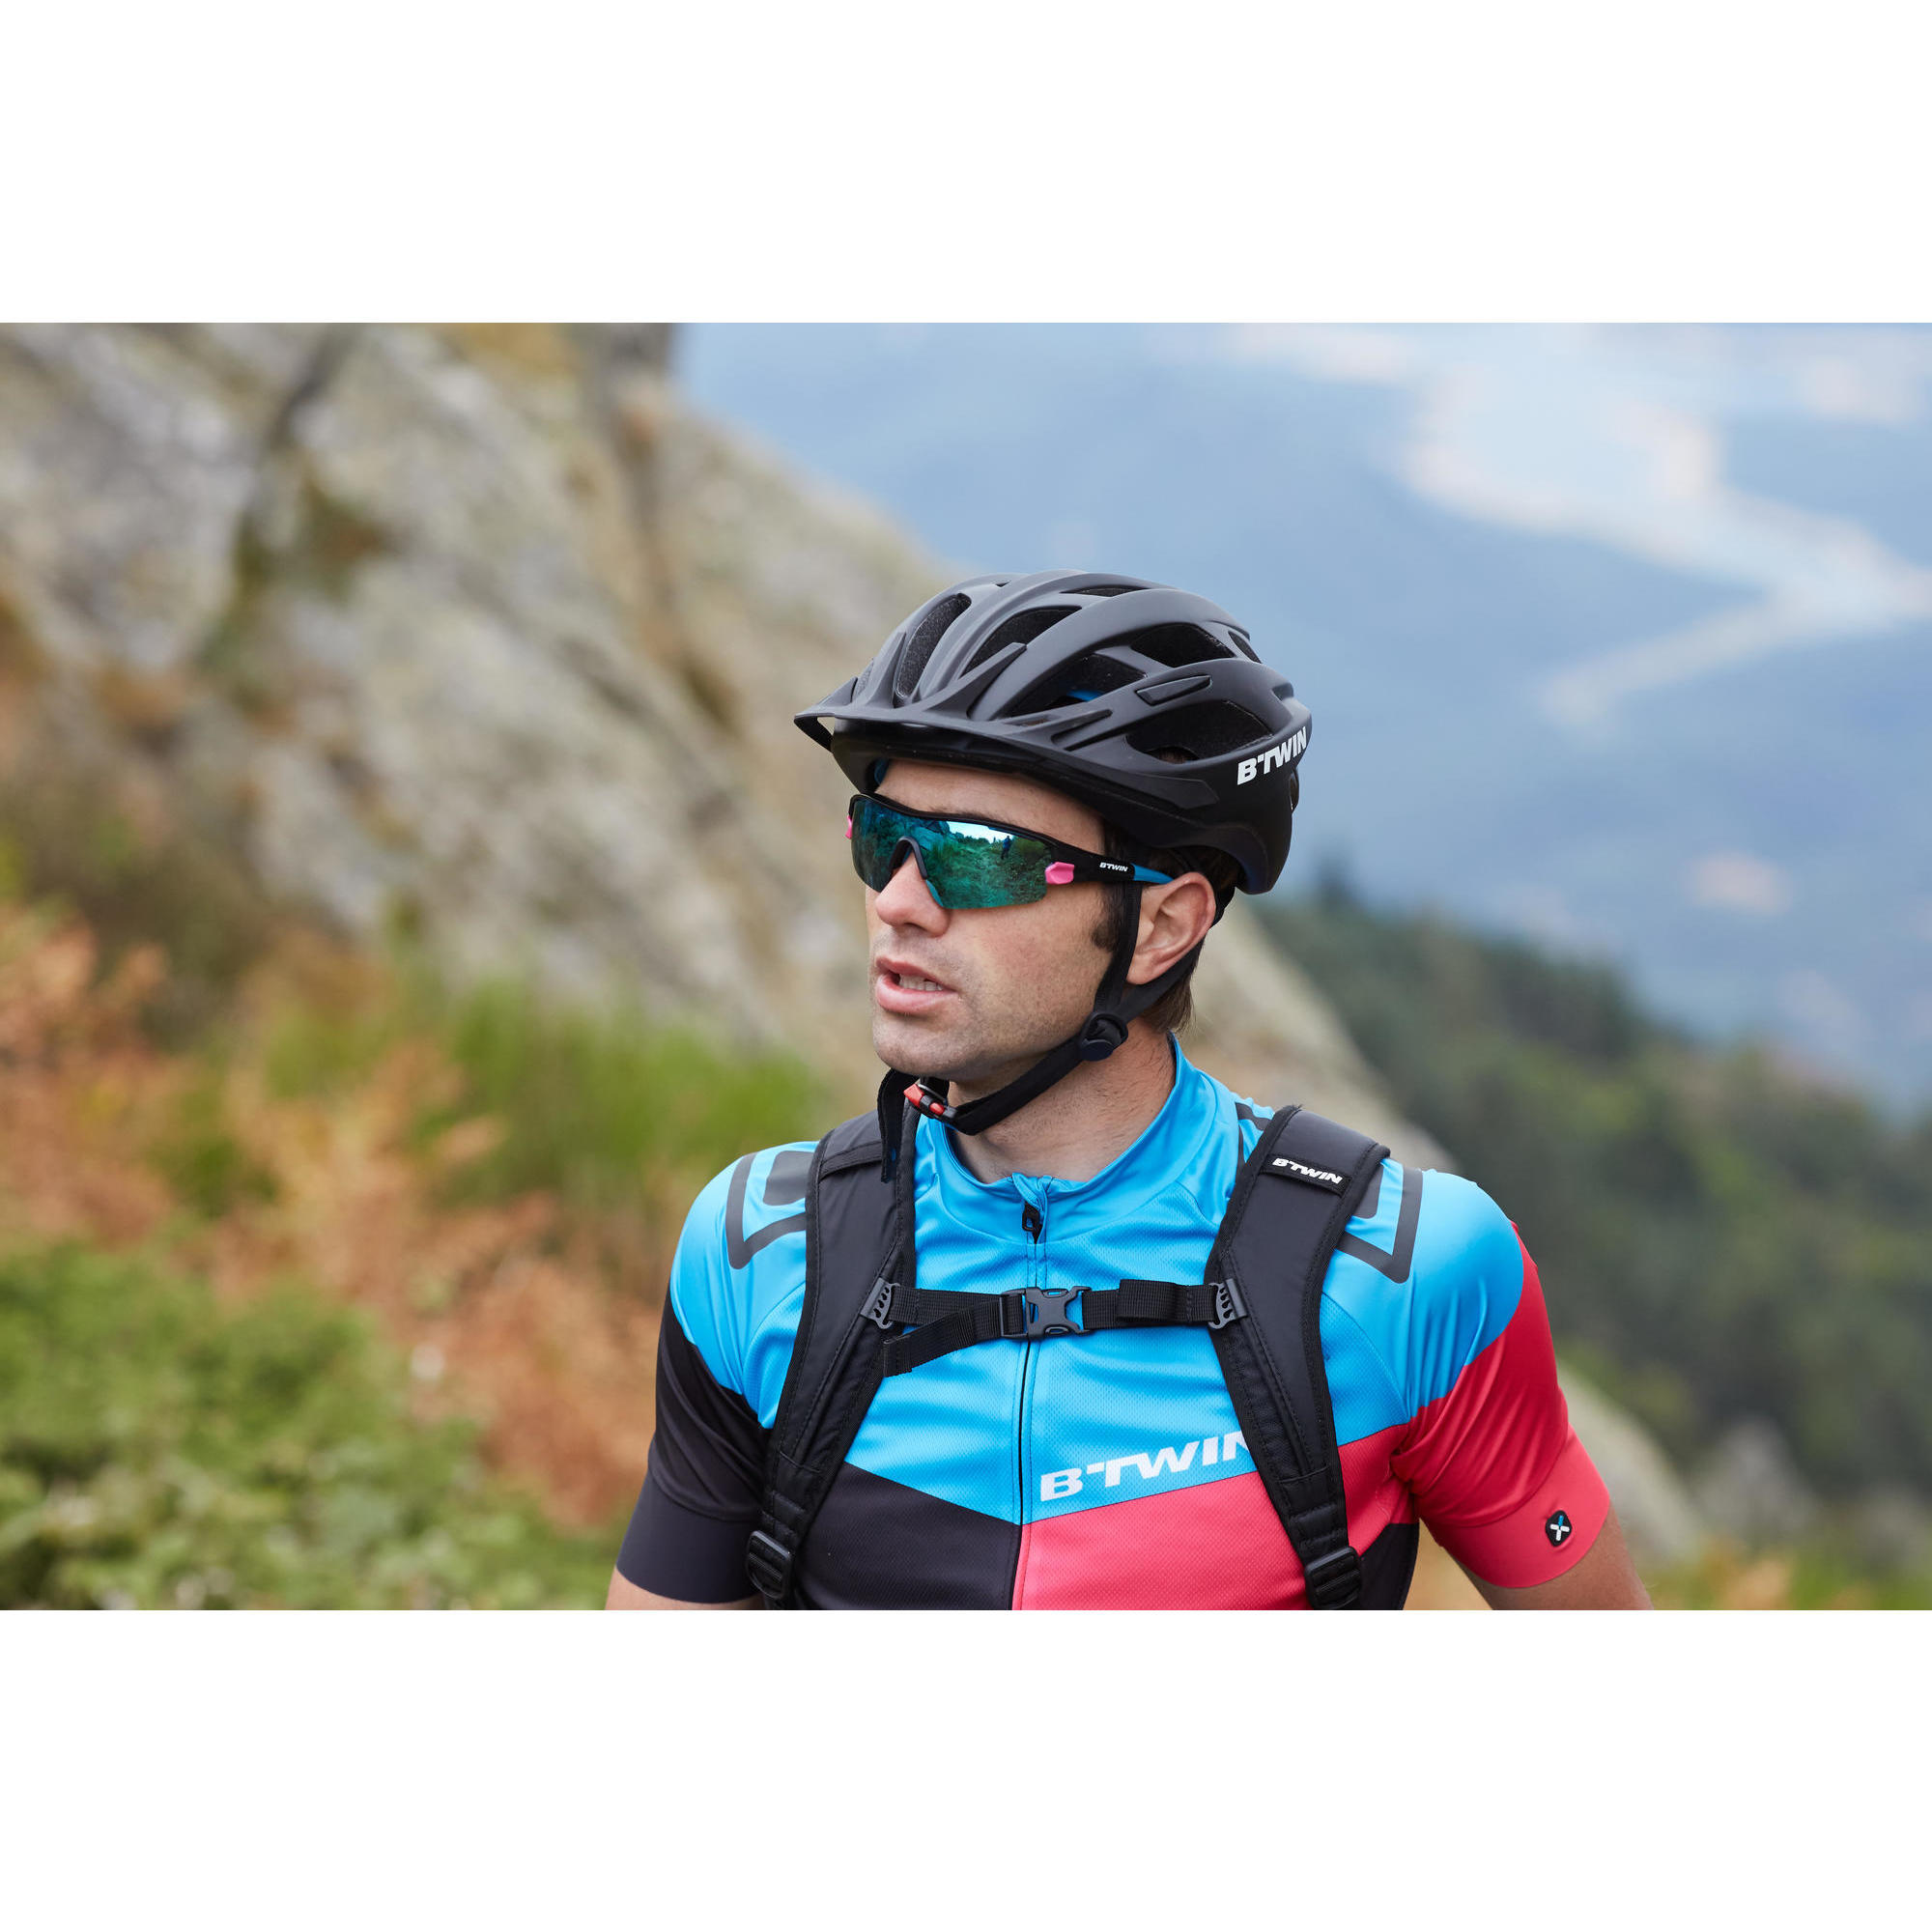 rockrider mountain bike helmet 500